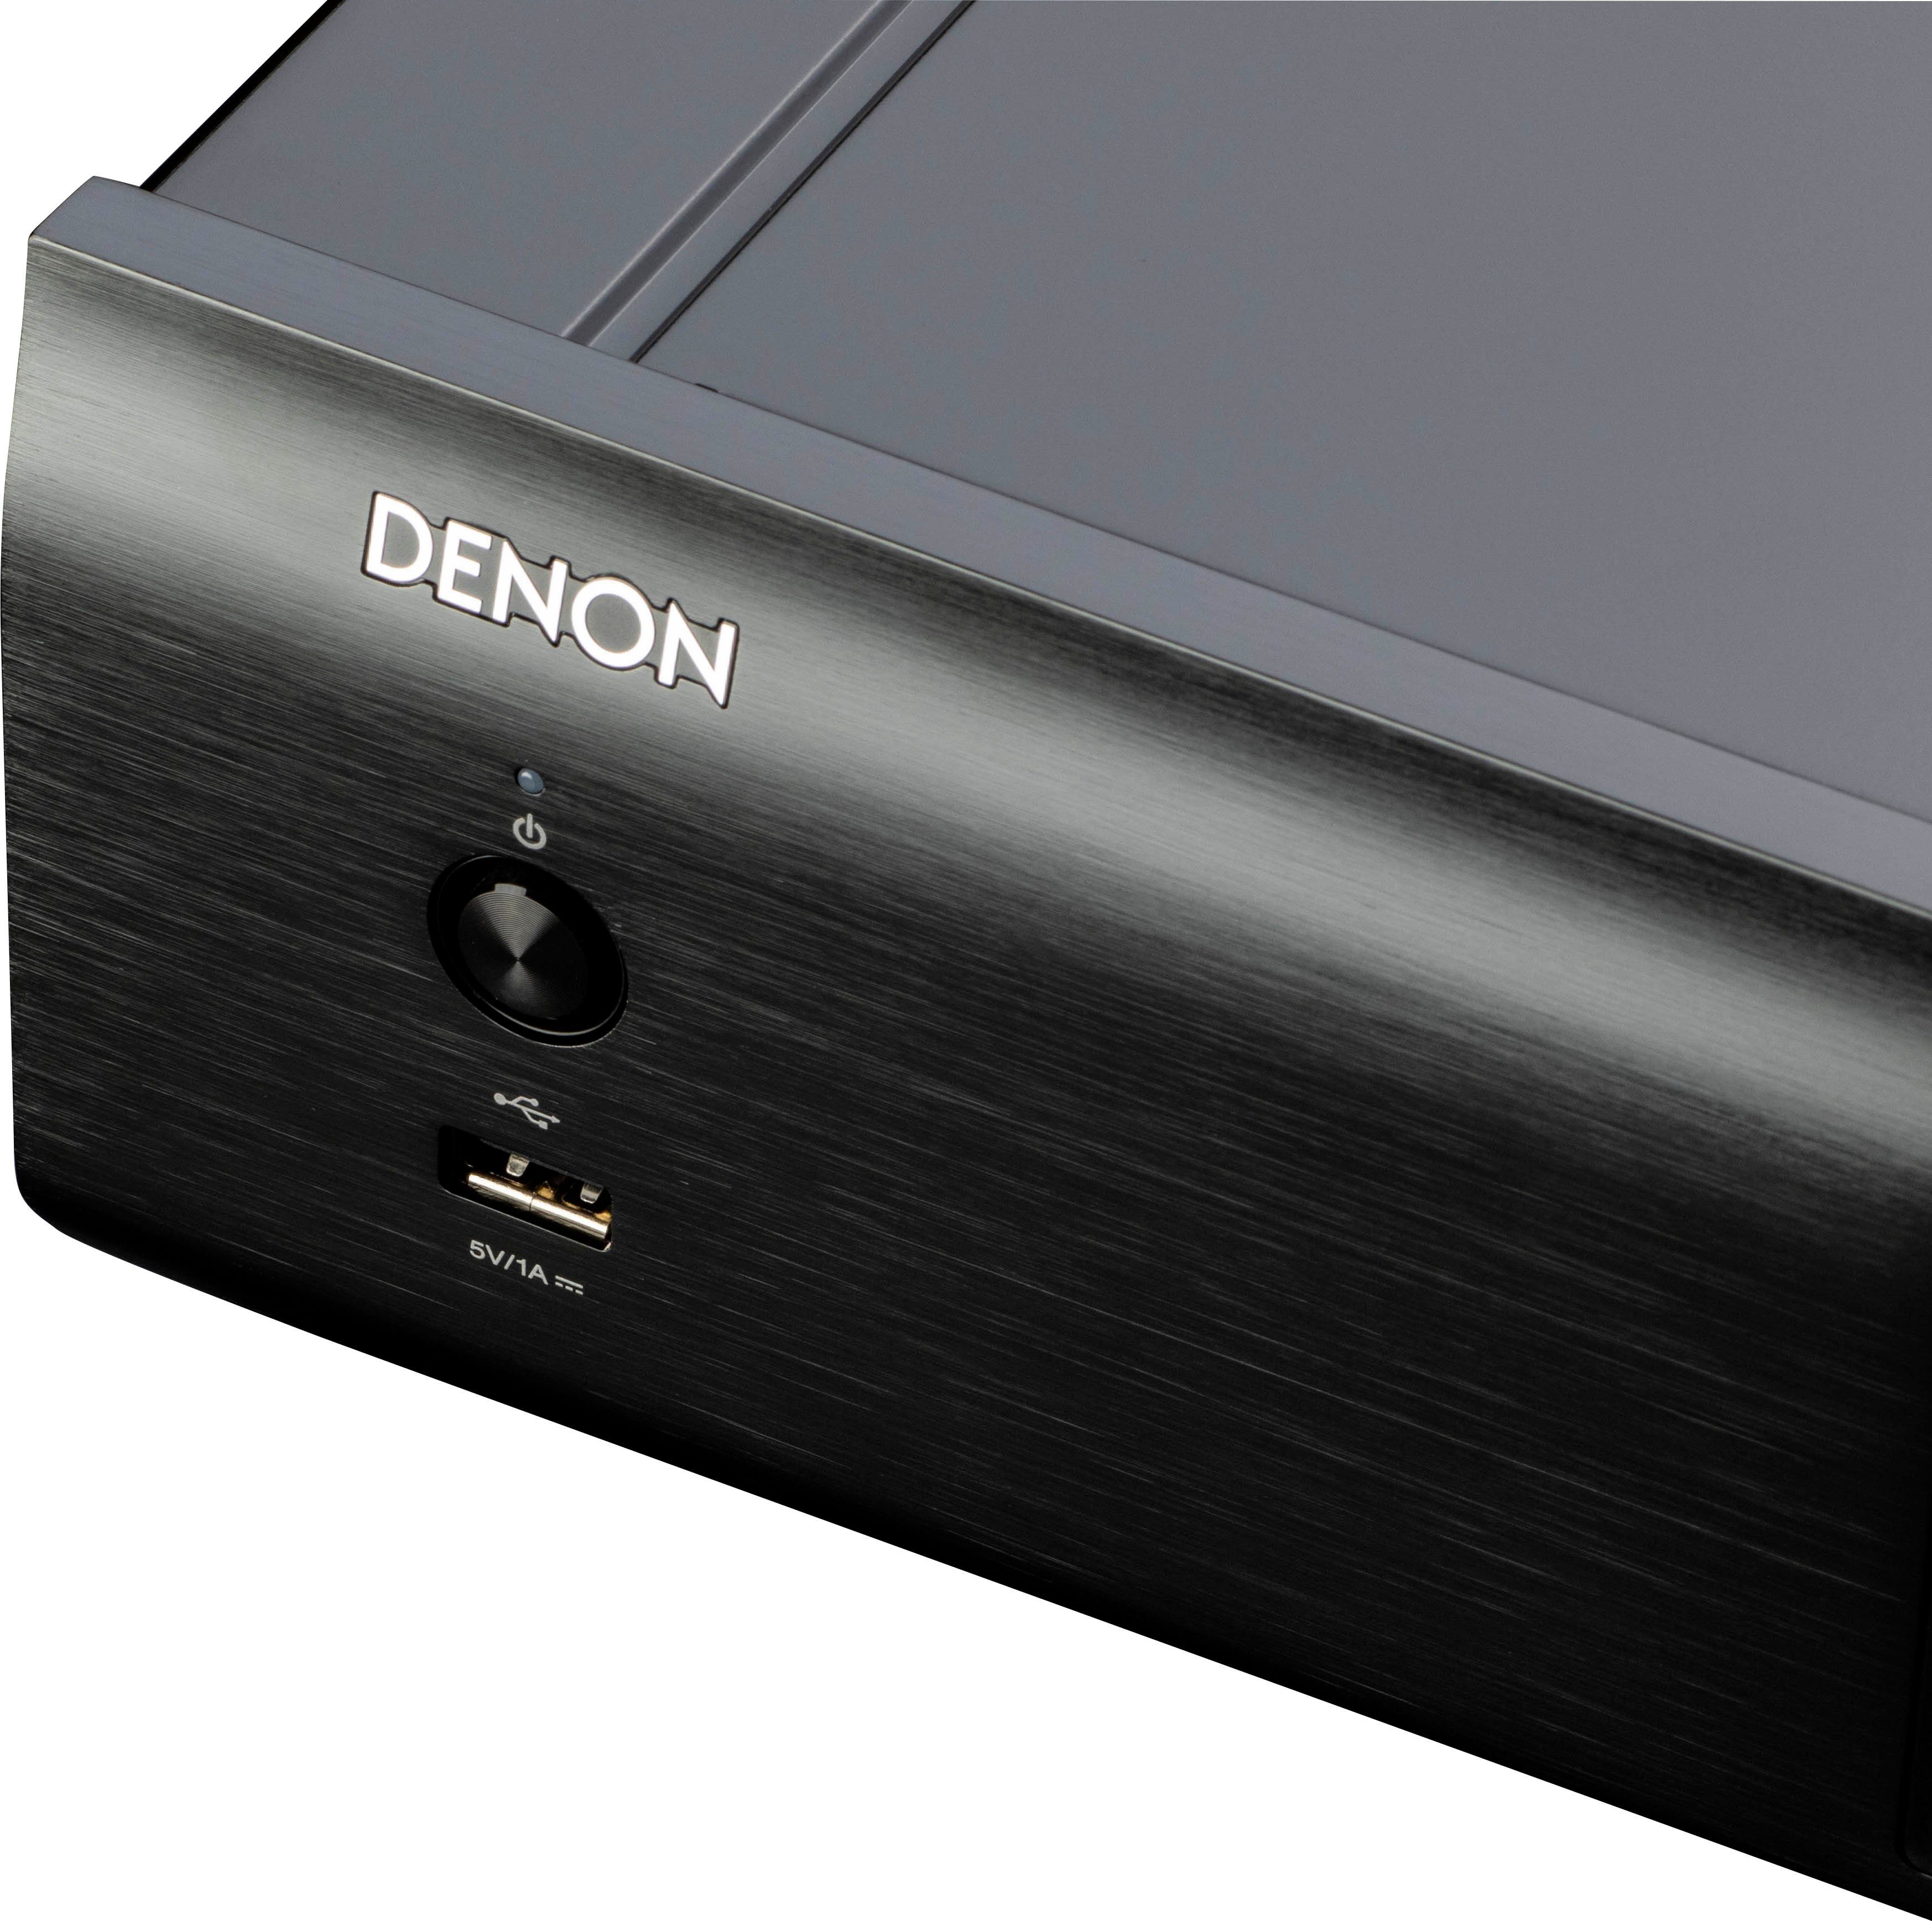 DCD-900NE (USB-Audiowiedergabe) CD-Player schwarz Denon